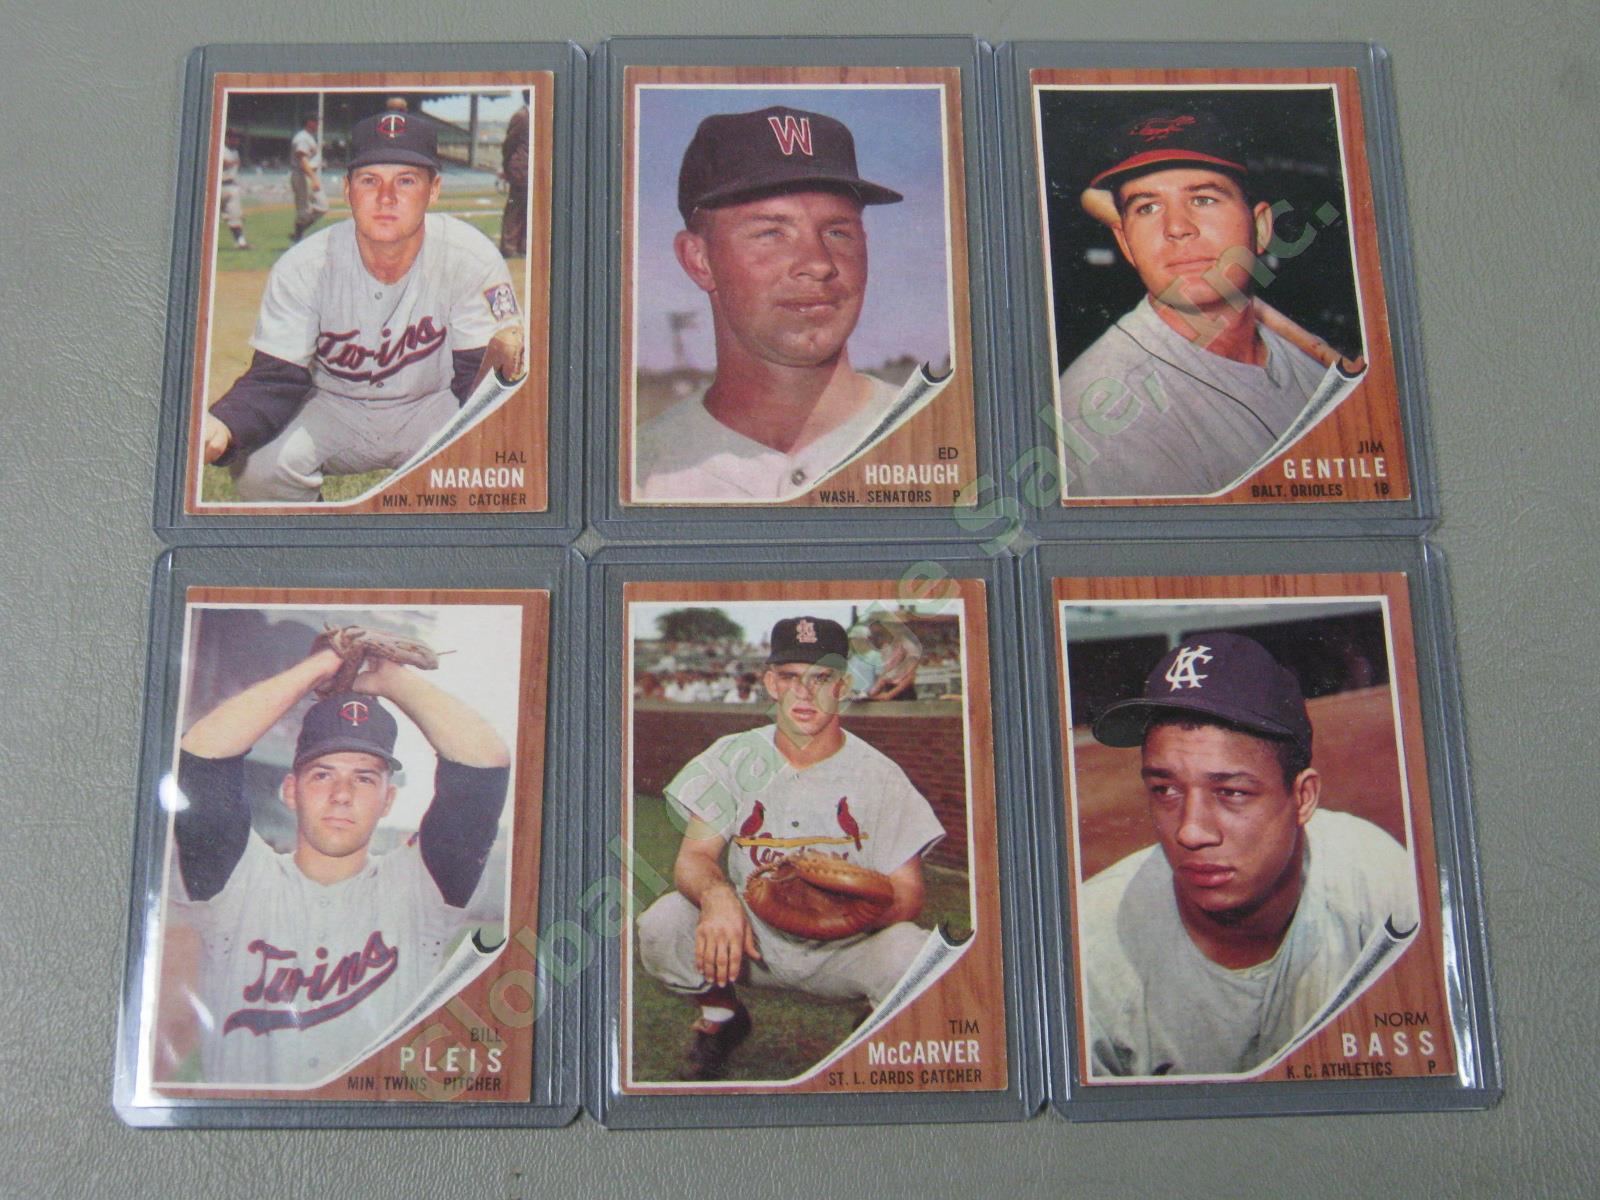 160 Vtg 1961 1962 1963 Topps Baseball Card Lot w/ RBI Home Run Leaders + VG-EX 10